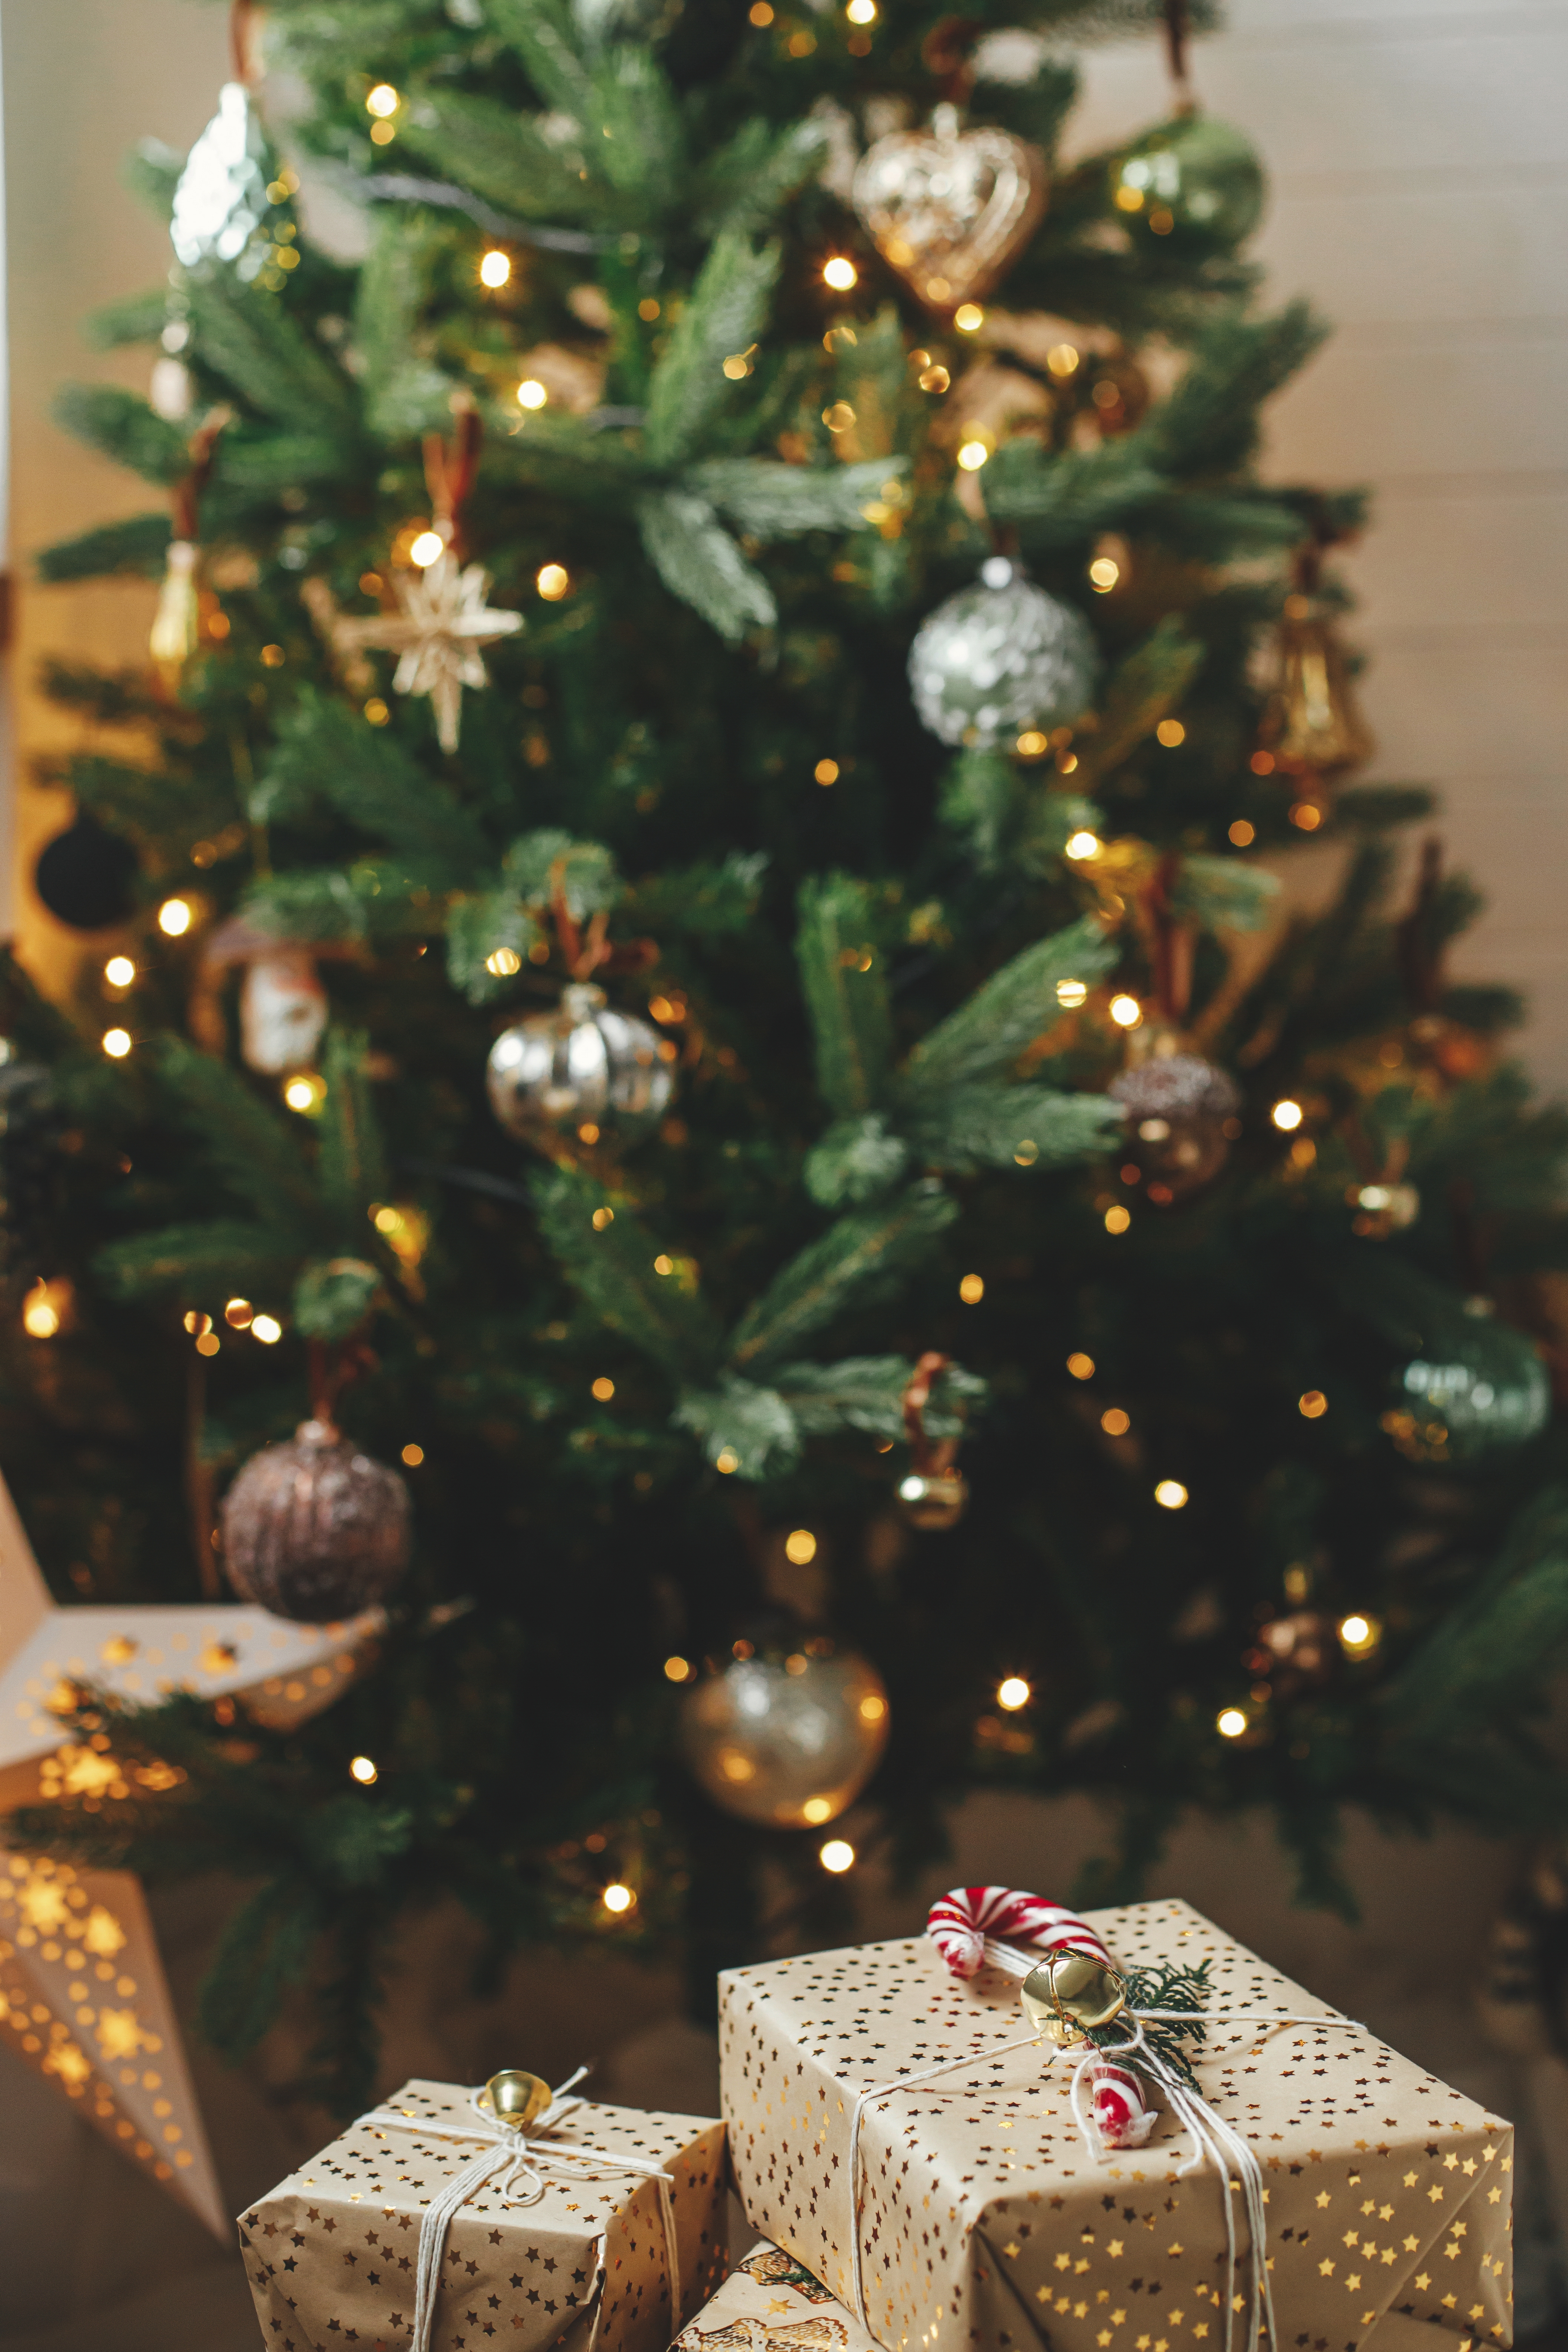 Un sapin de Noël avec des paquets cadeaux posés dessous | Source : Shutterstock